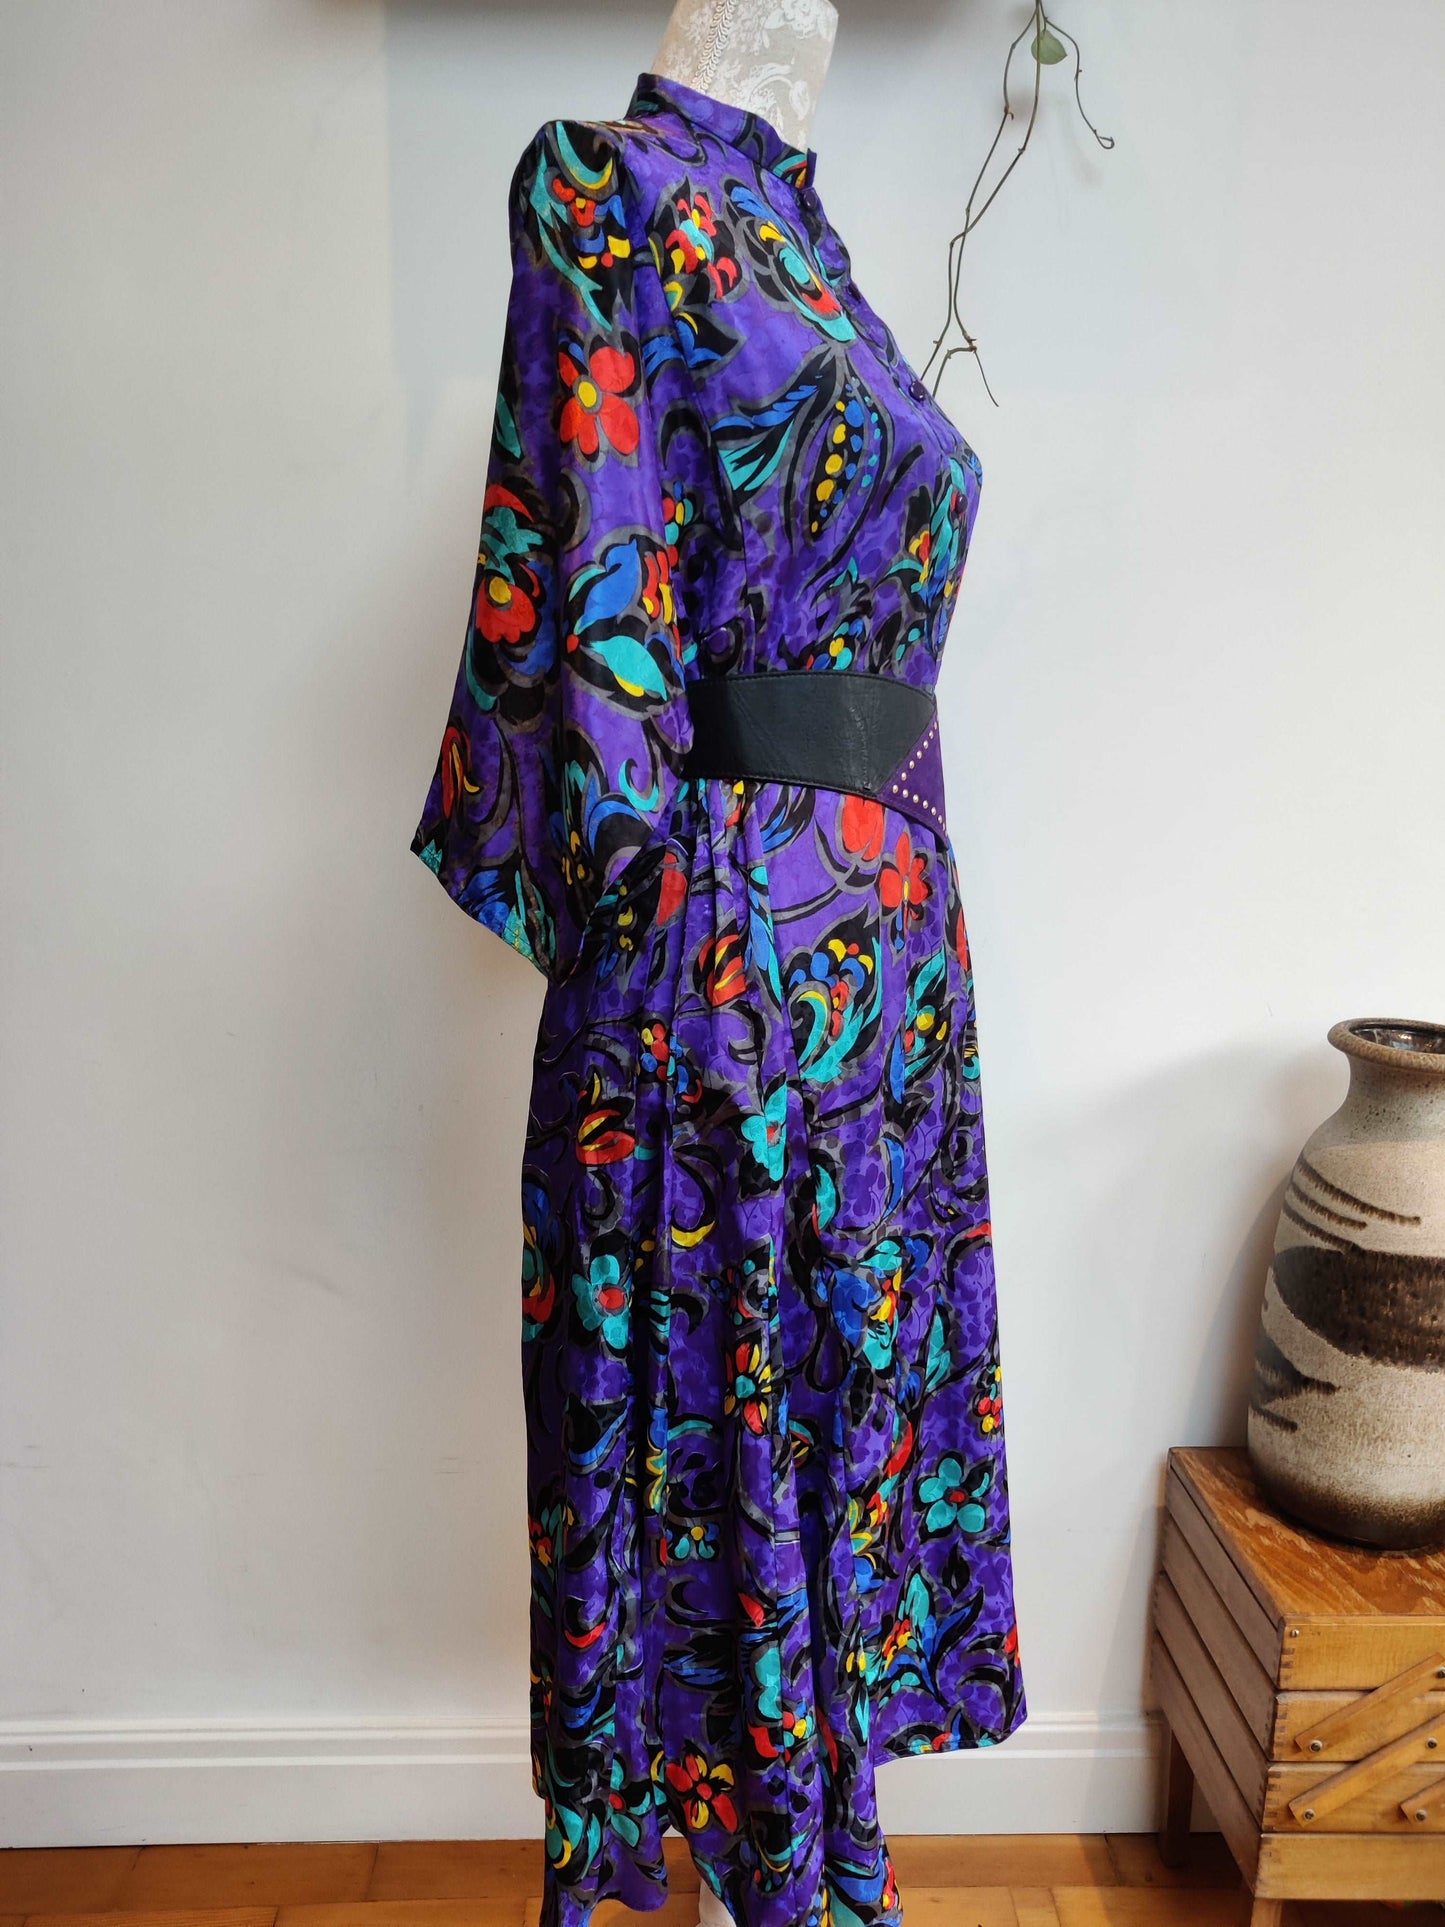 High neck floral vintage dress size 20.